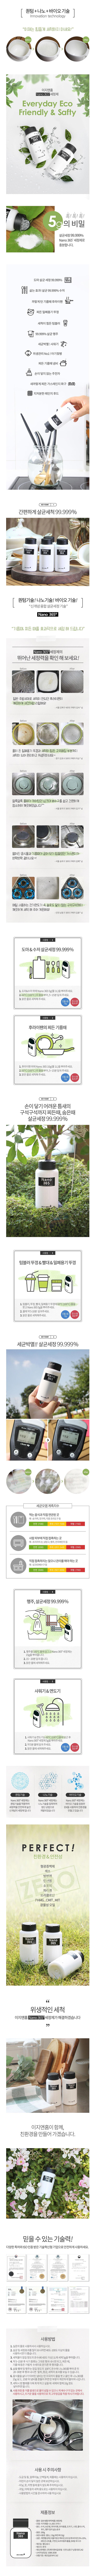 koreaaaair01-d.jpg